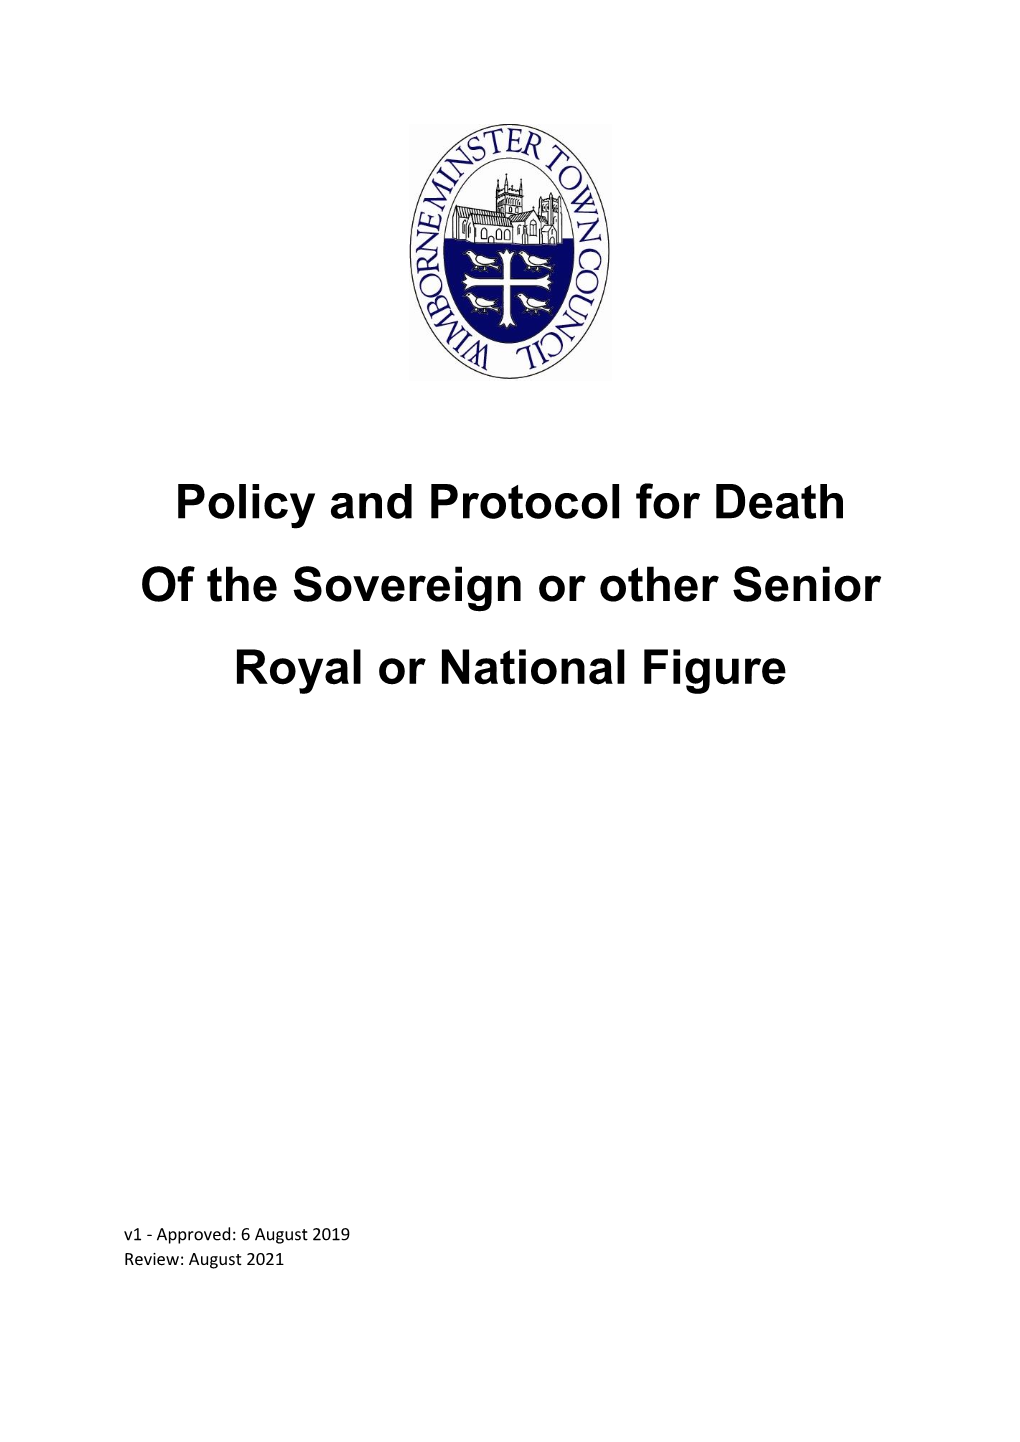 Royal Death Policy